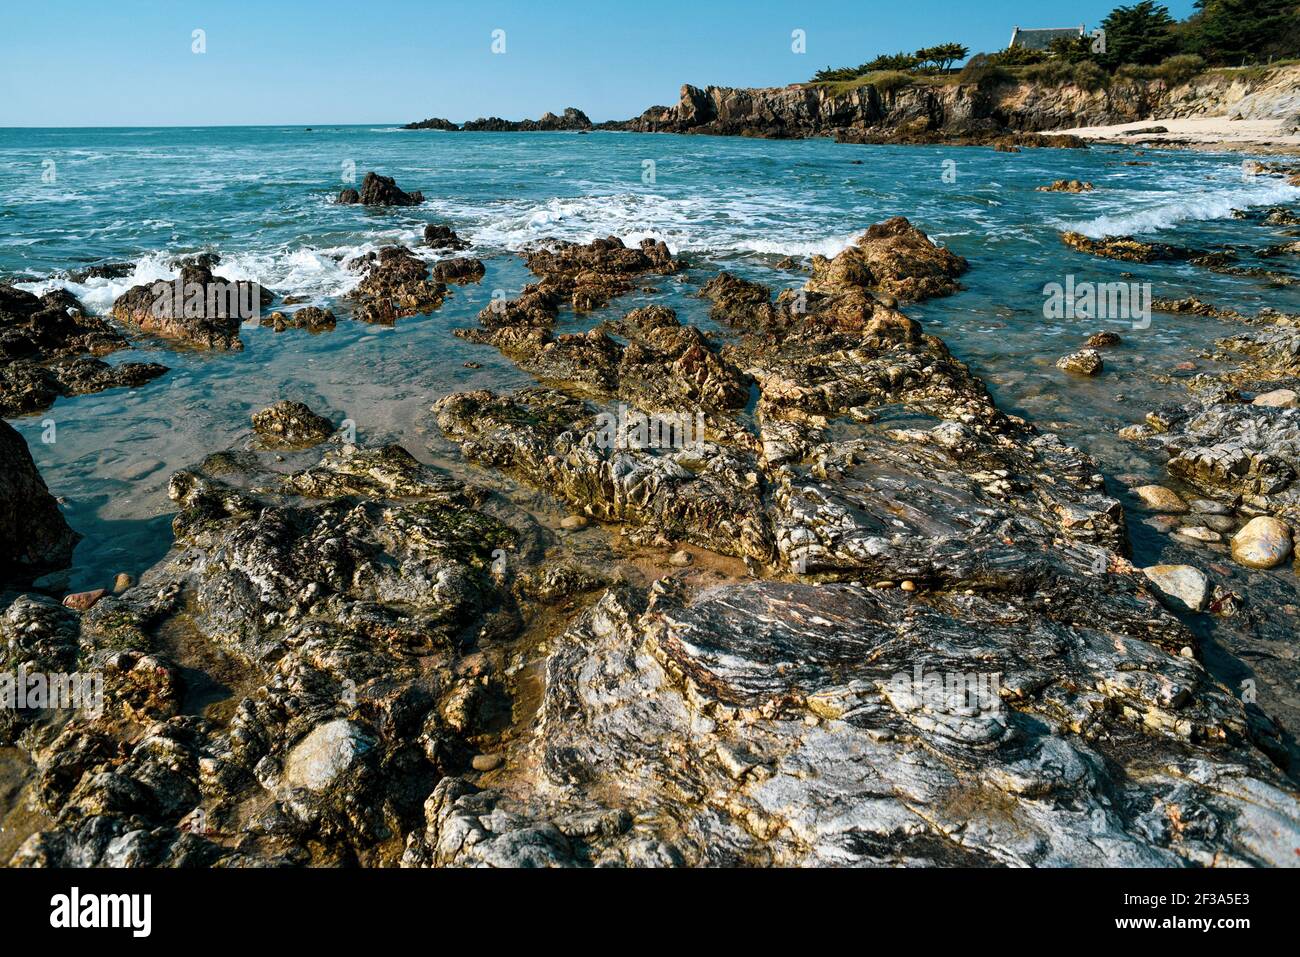 Sea landscape, rocky ocean coast, selective focus. Stock Photo